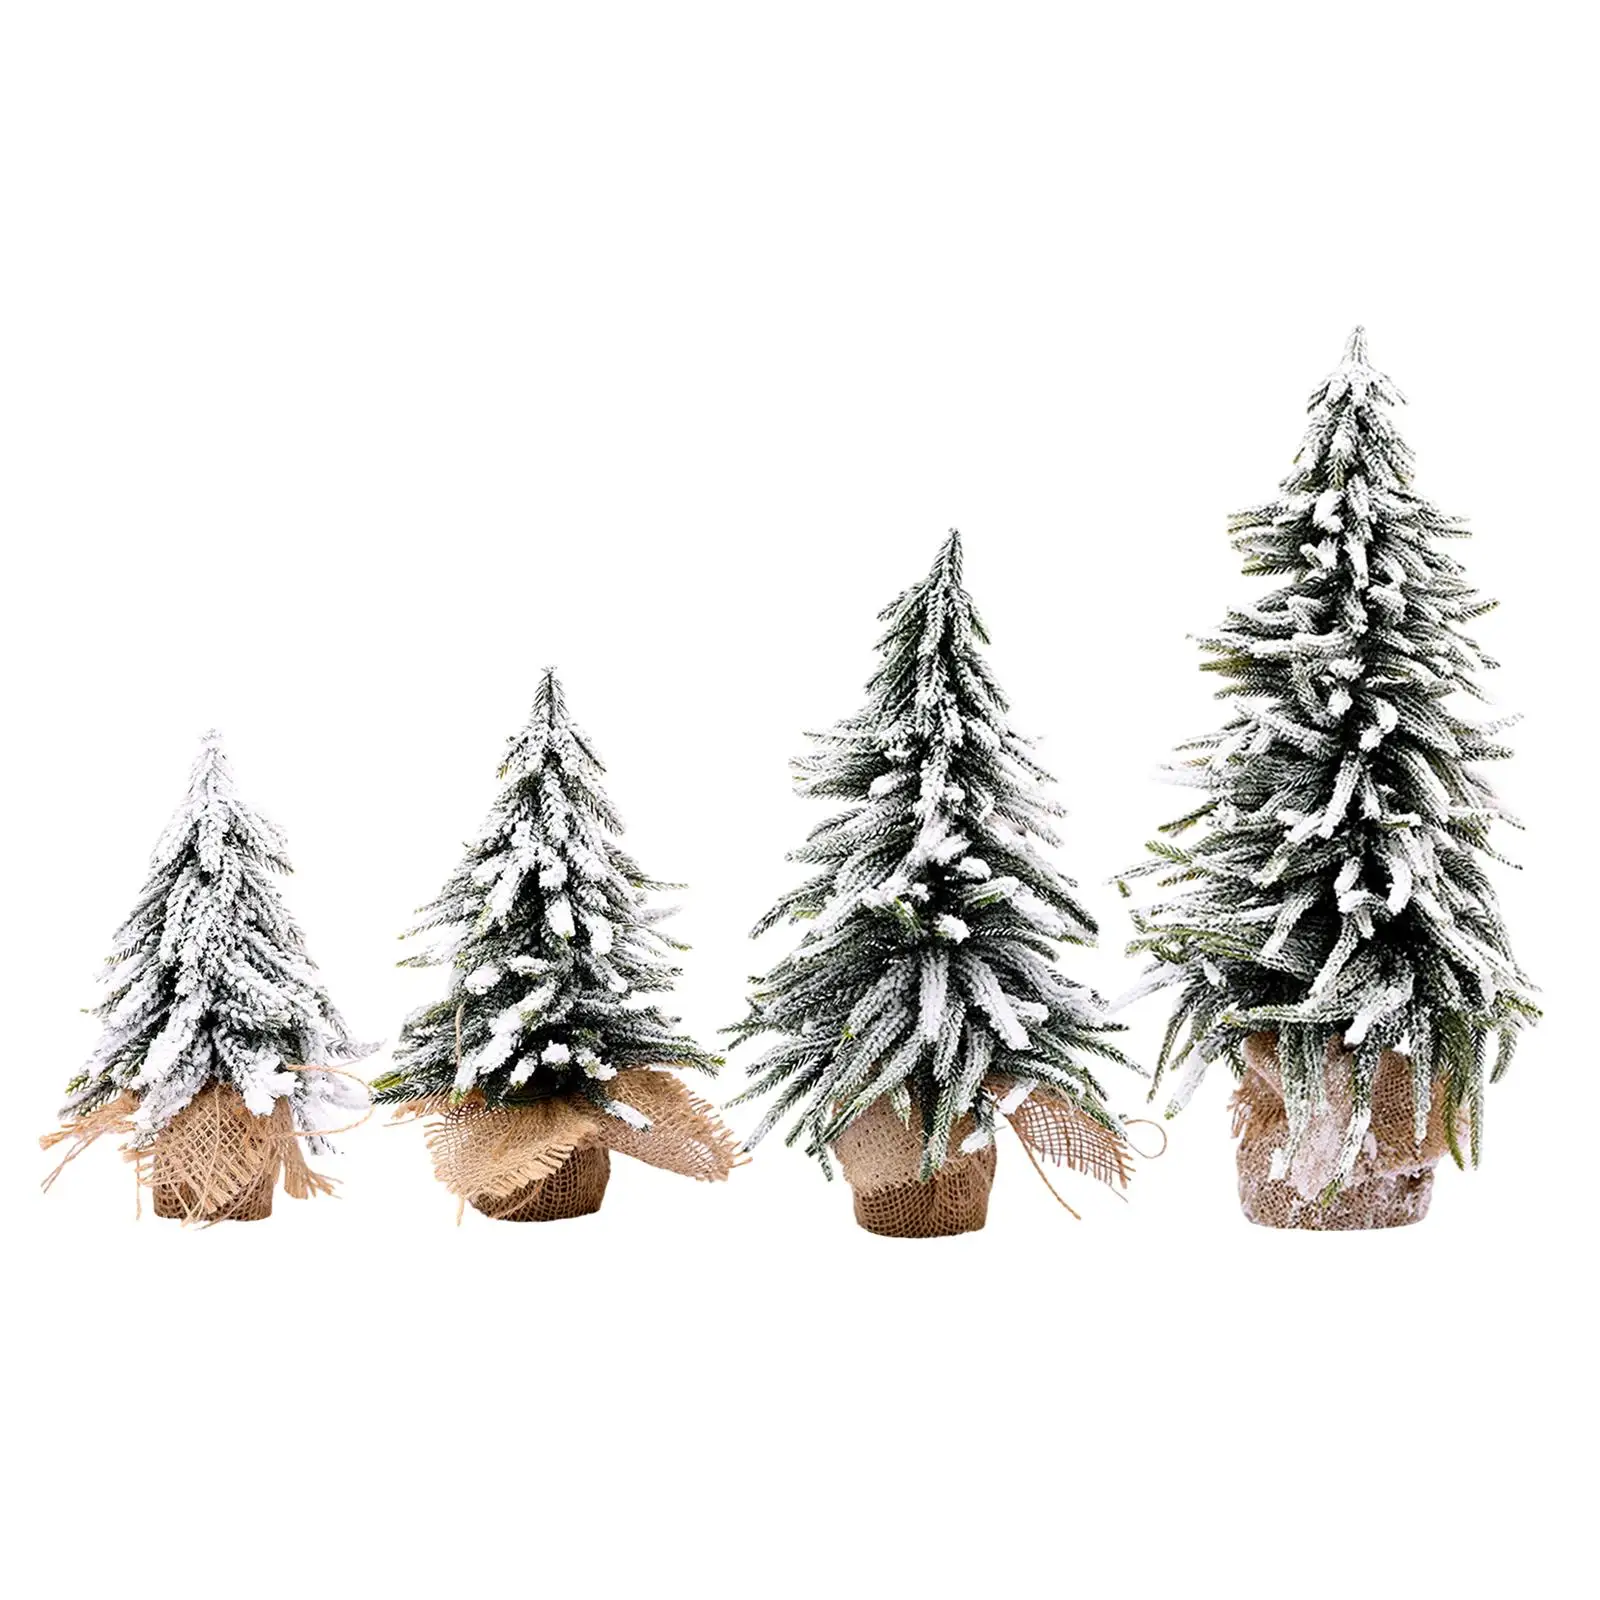 Искусственная рождественская елка в деревенском стиле Снежная елка для рождественских и новогодних витрин магазинов